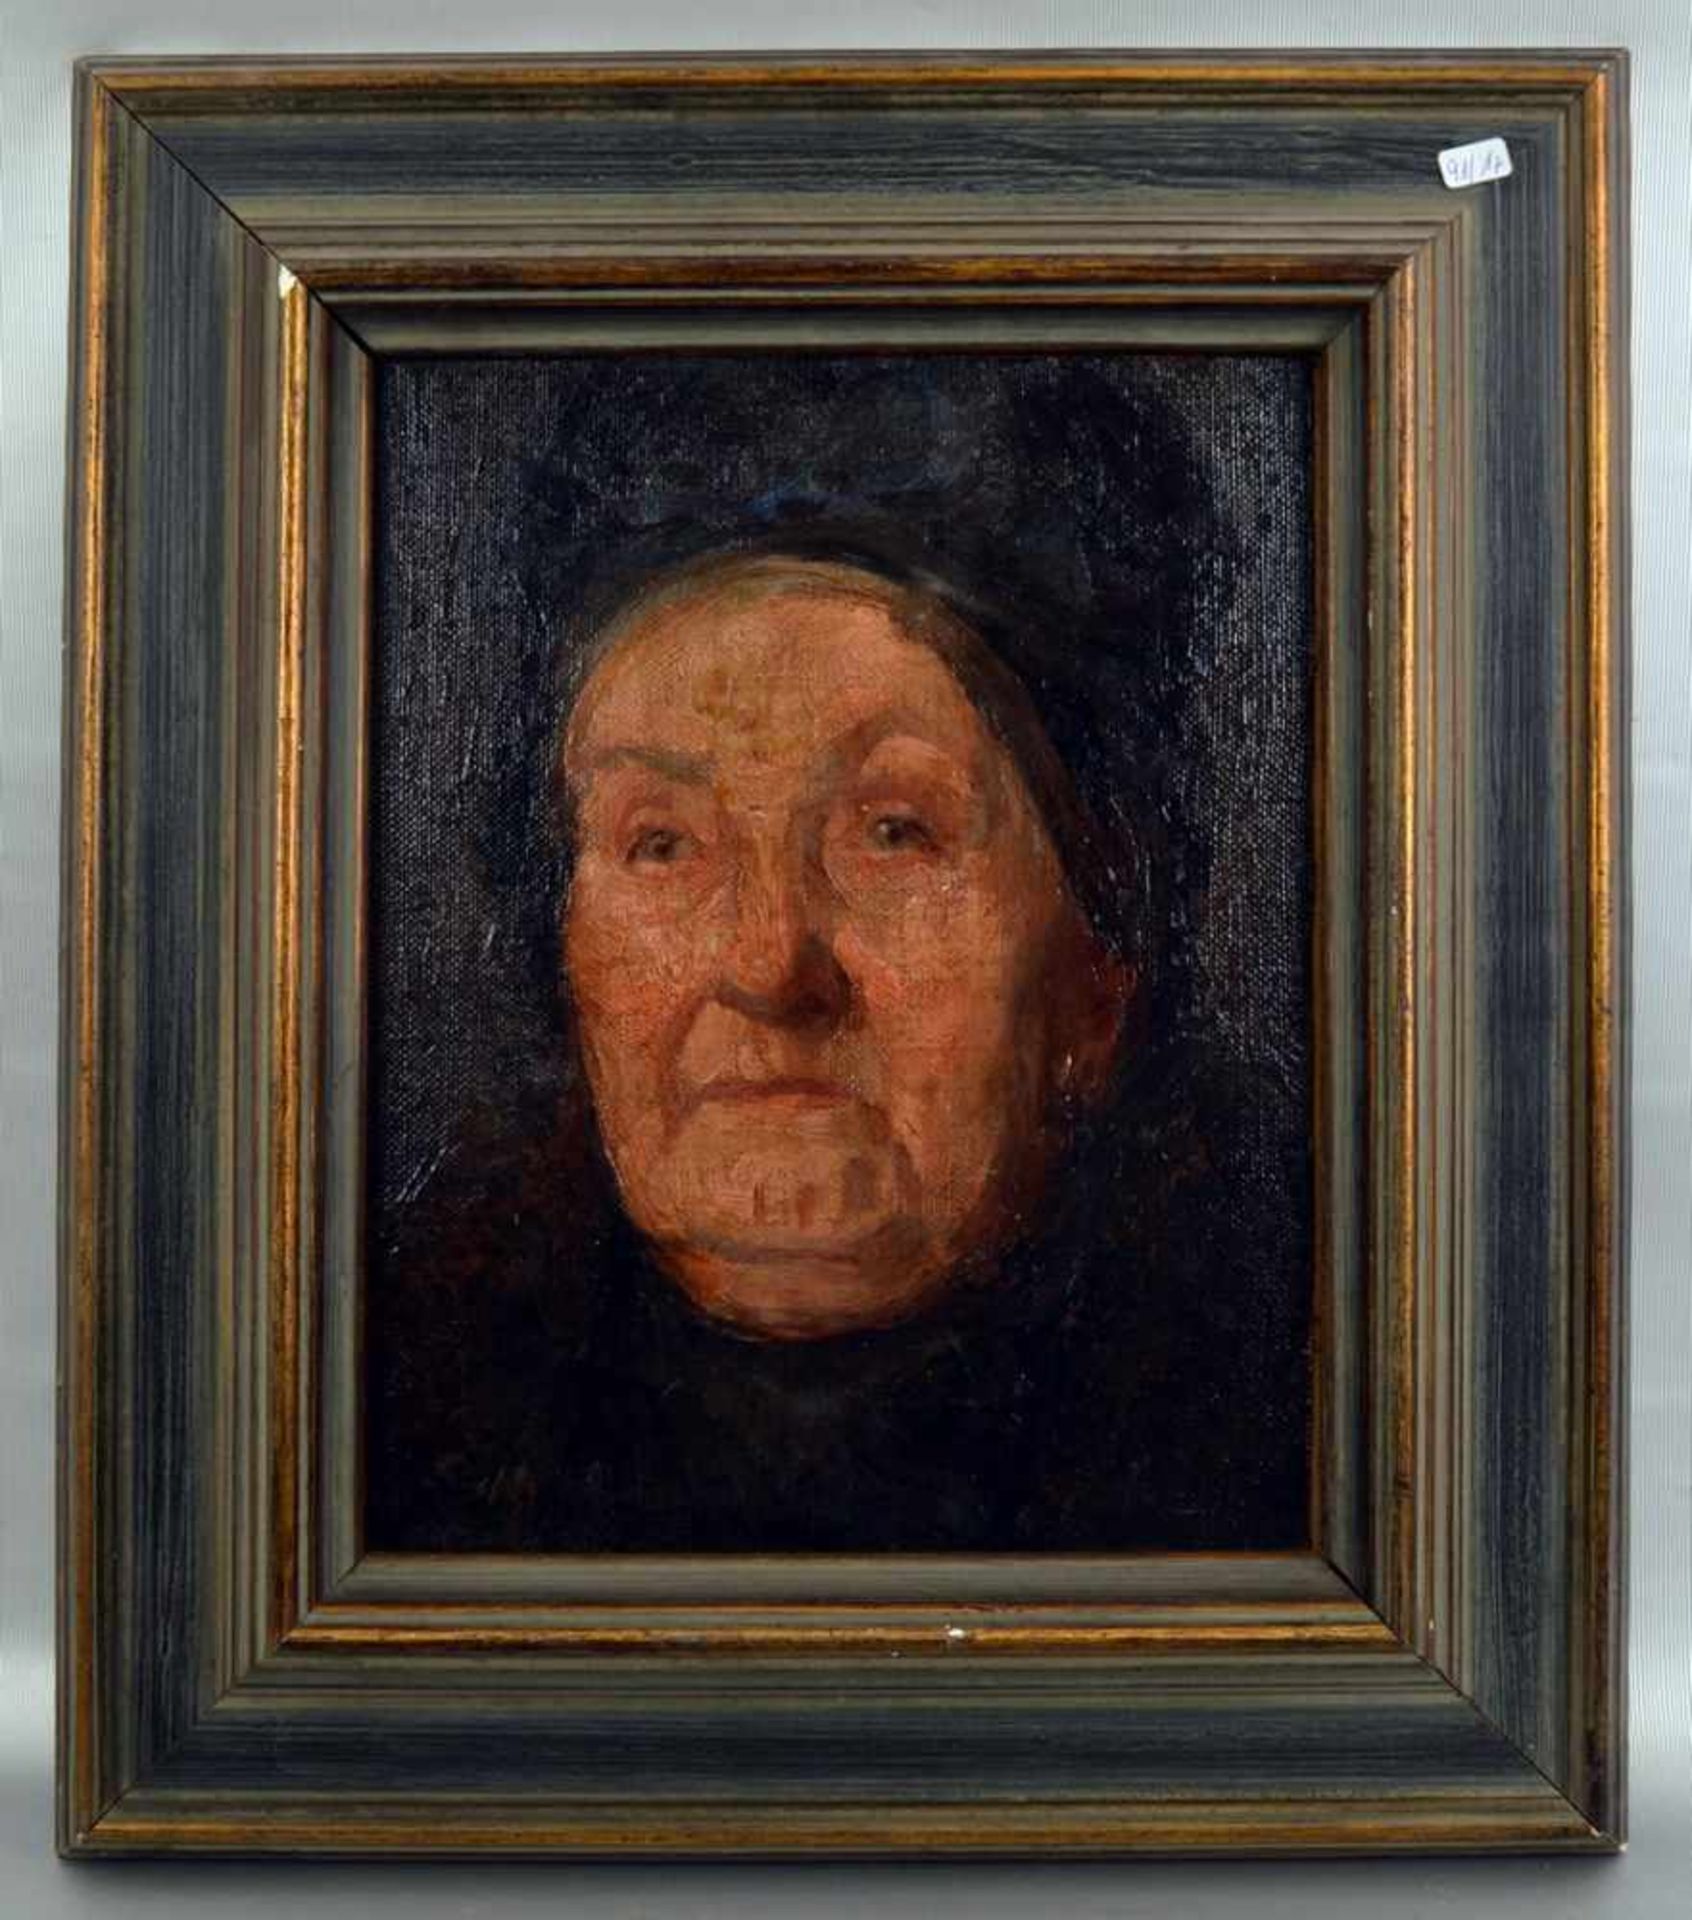 Unbekannter Maler 20. Jh., Portrait einer alten Dame, Öl/Lwd., auf Holz aufgezogen, 24 X 31 cm,